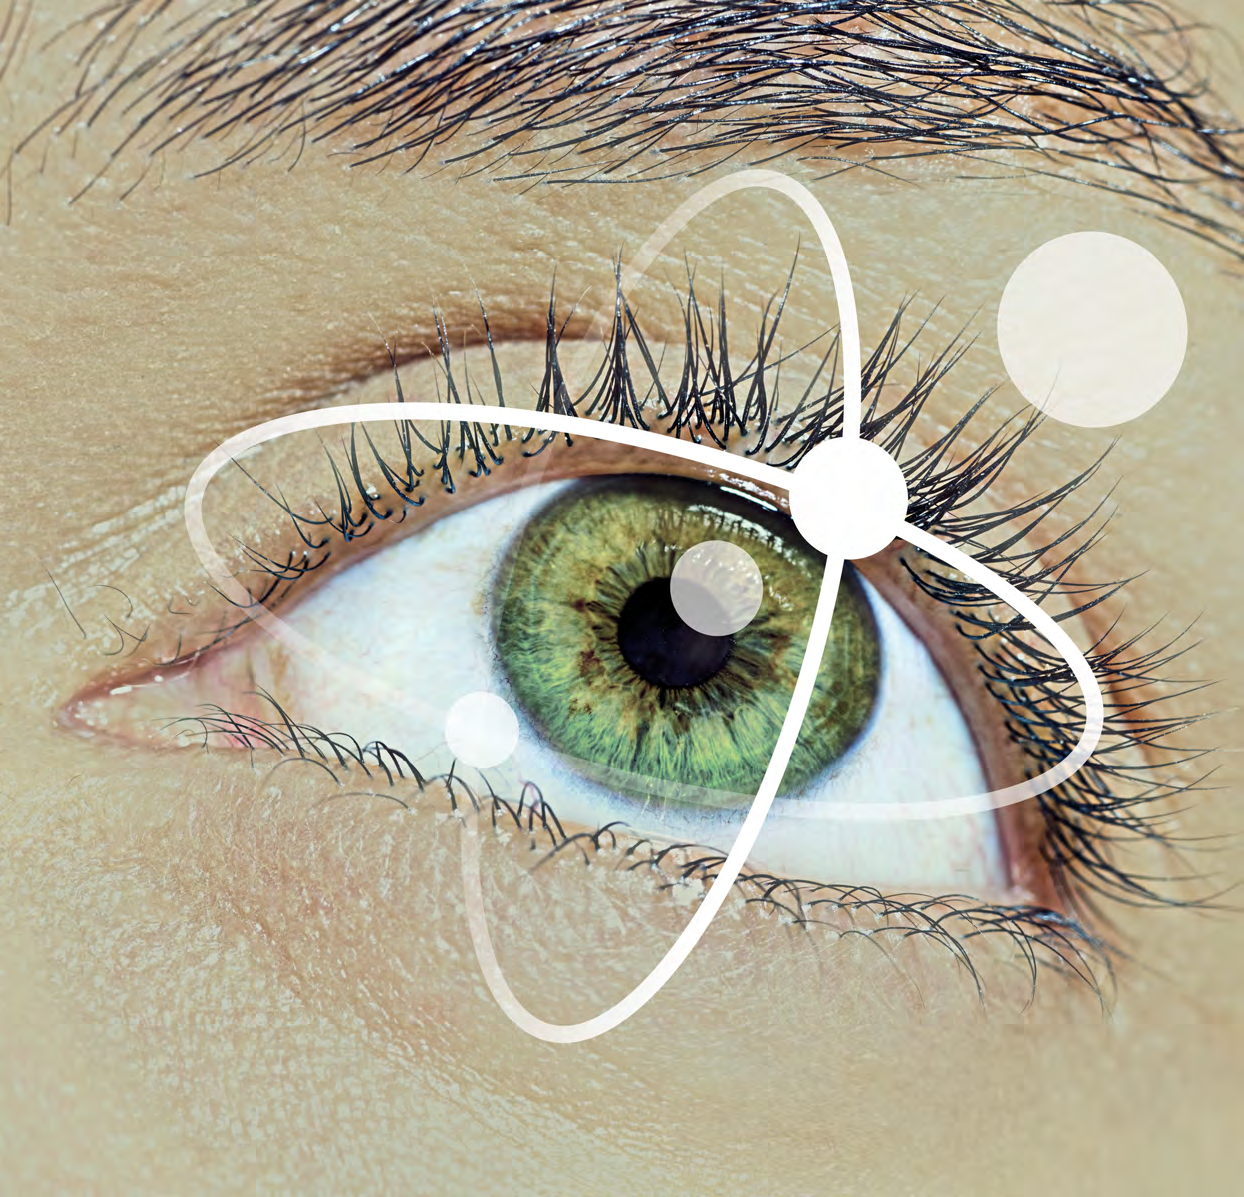 Fremtidens synsundersøkelse Hoyas verktøy Den intelligente løsningen for fiksasjonsdisparitet Hoya EyeGenius er et komplett og klinisk uttestet system for synsundersøkelser som innebærer en helt ny